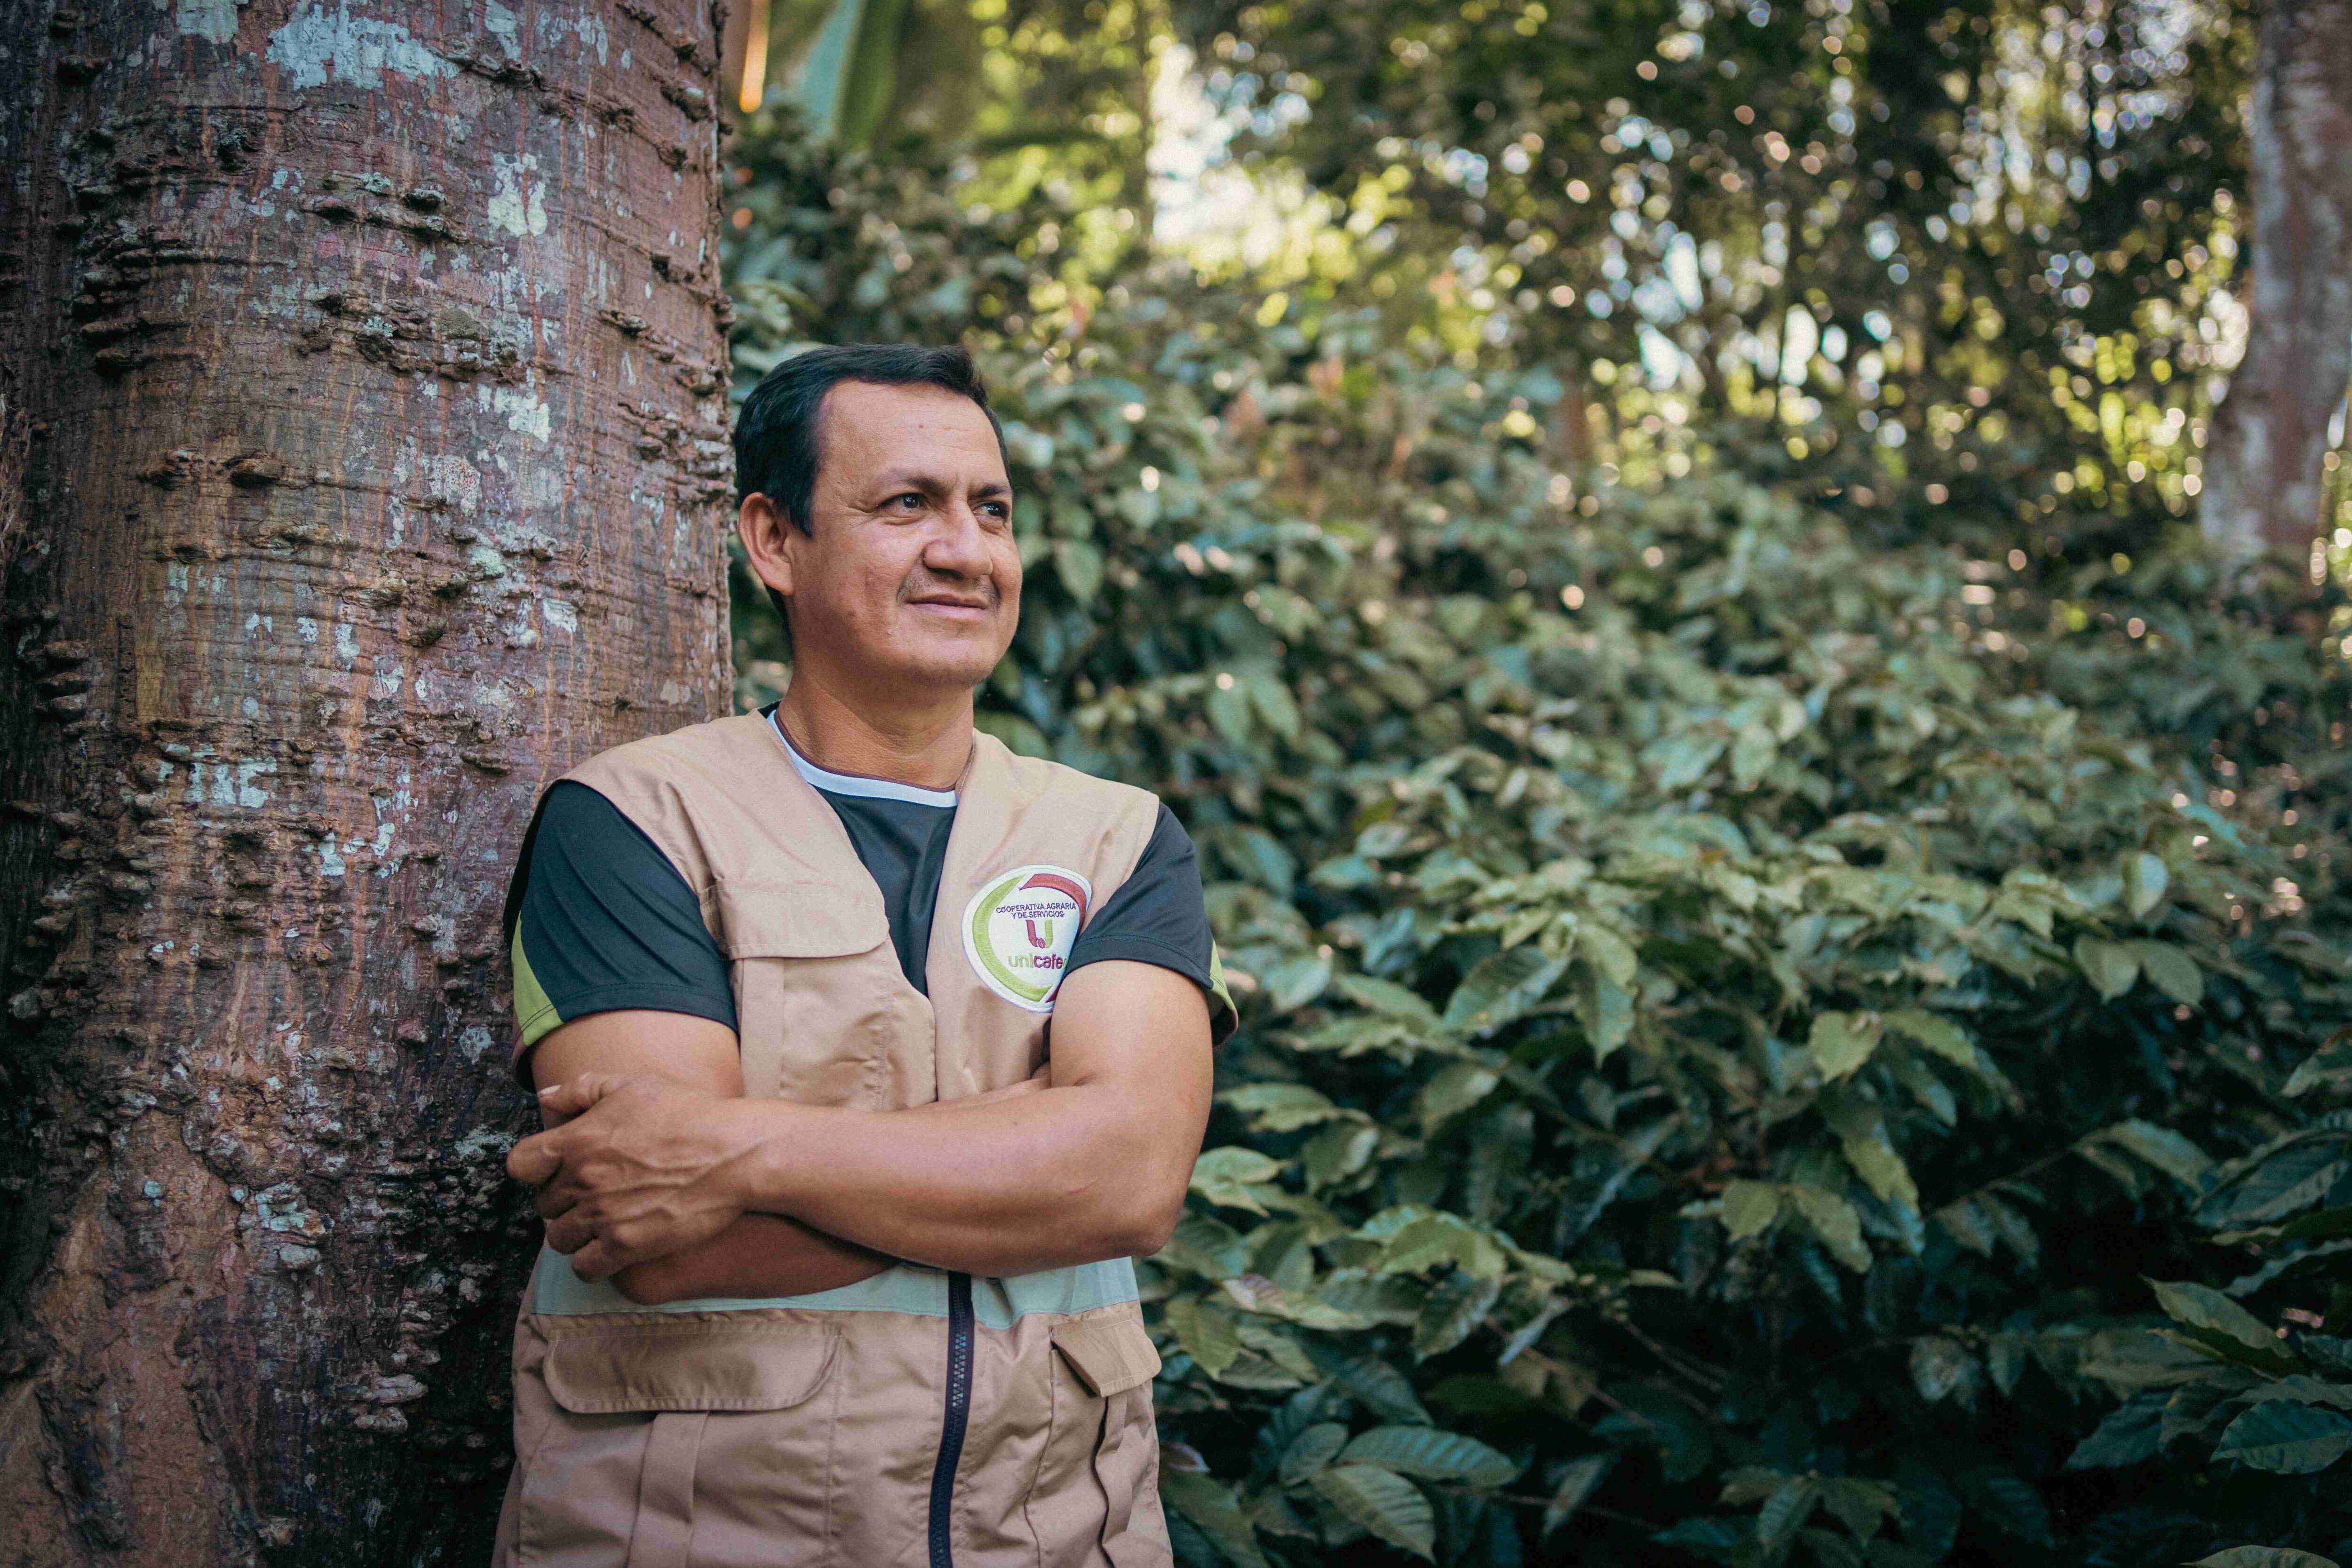 Luis Villegas es un caficultor que ha integrado la preservación de árboles en su finca y que produce abono orgánico para reducir su huella de carbono. (Foto: Rikolto)